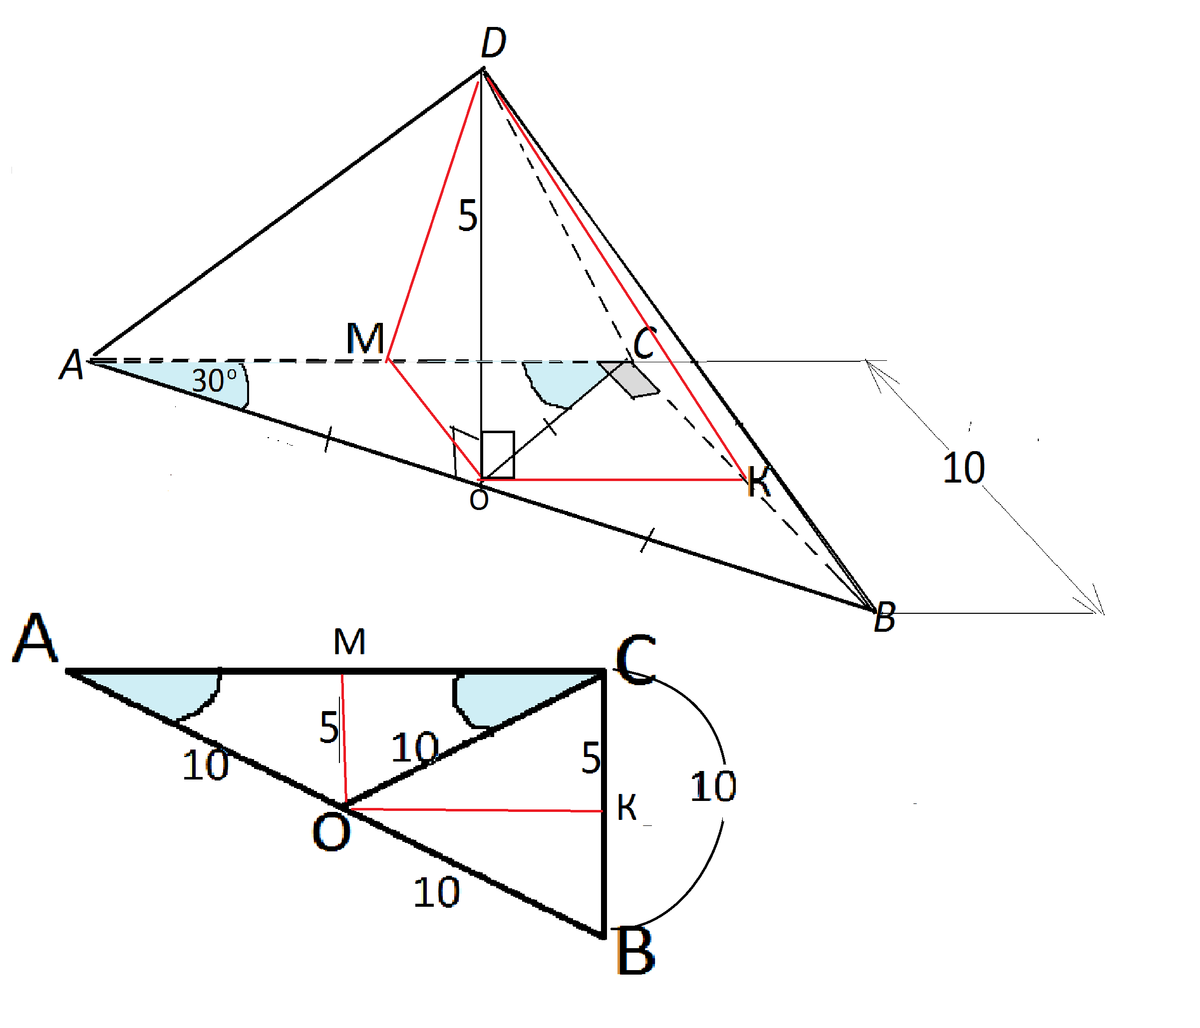 Пирамида прямоугольный треугольник 60 градус. В основании пирамиды DABC лежит прямоугольный треугольник ABC, C 90. Треугольная пирамида в основании прямоугольный треугольник. Высота в пирамиде с основанием прямоугольный треугольник. Высота треугольной пирамиды в основании прямоугольный треугольник.